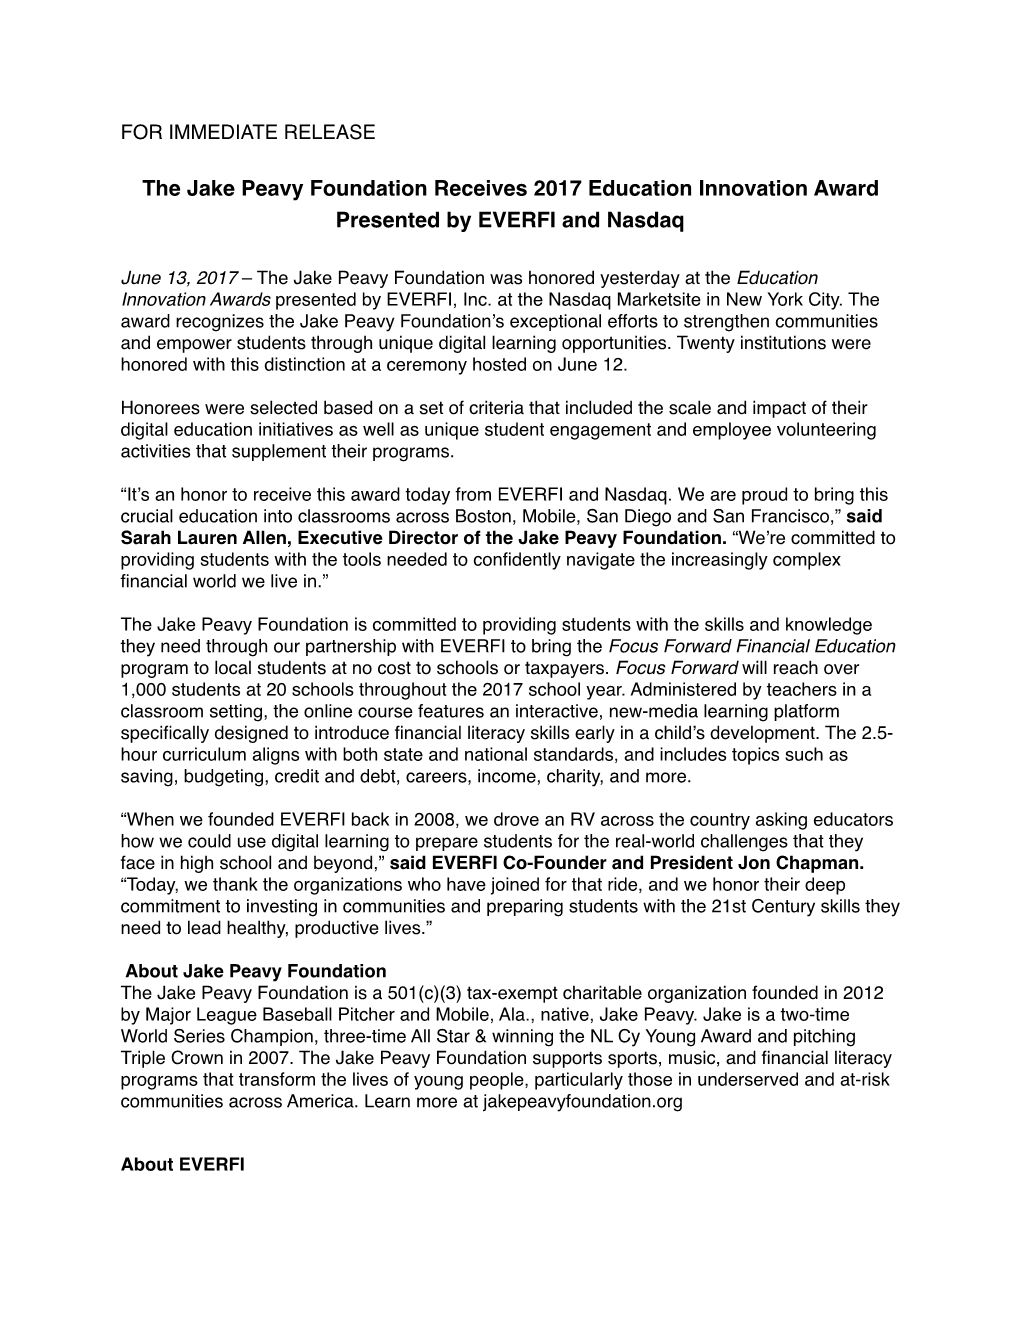 JPF Receives Education Innovation Award 6.13.17